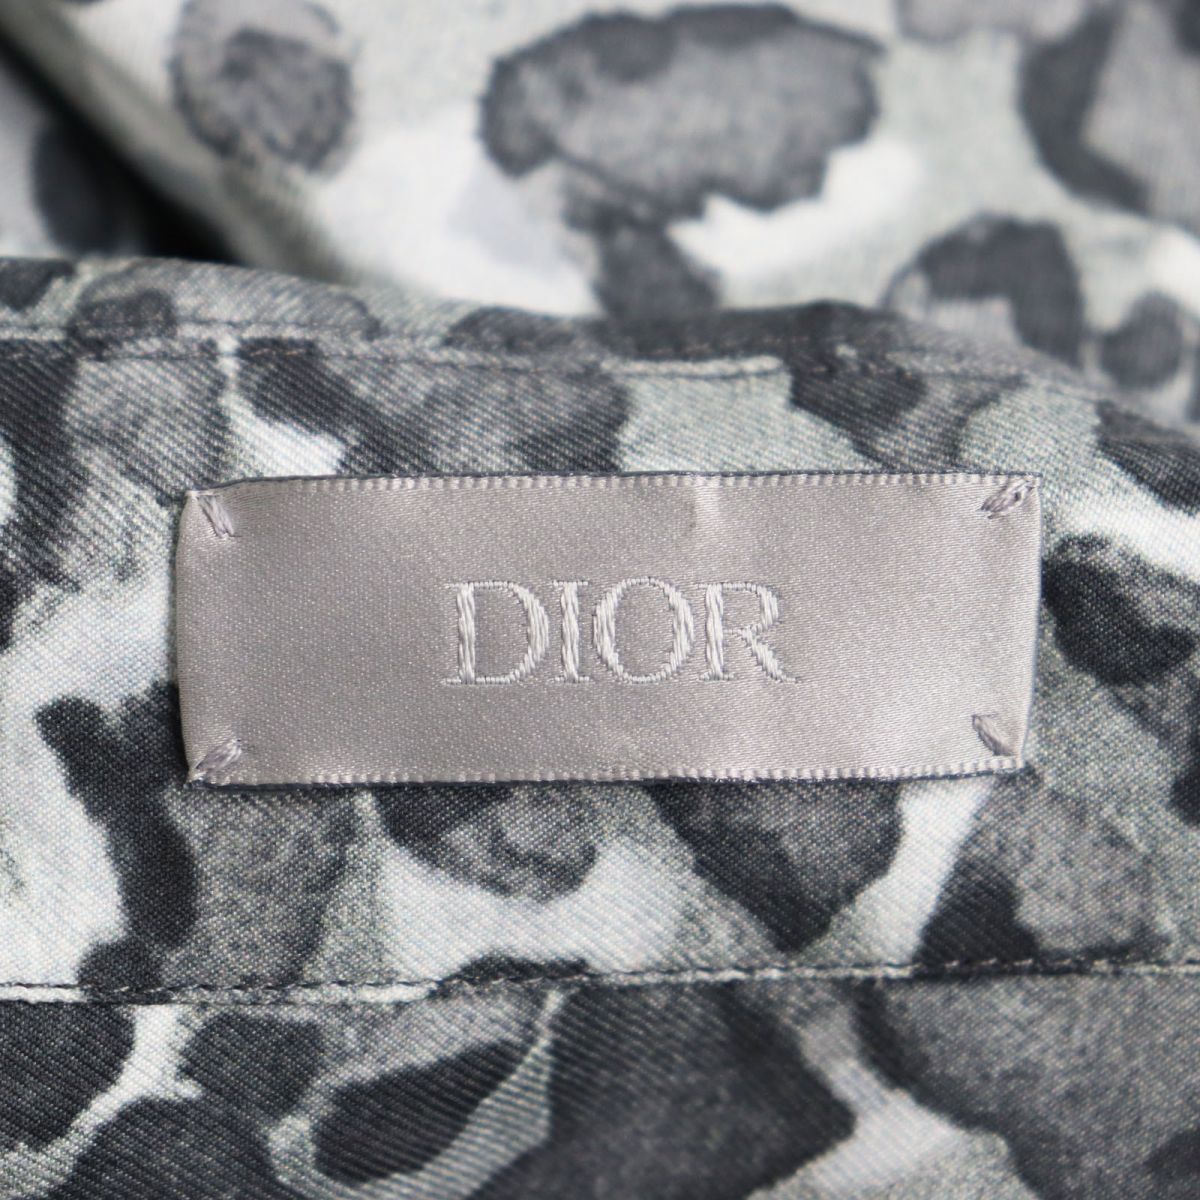  прекрасный *DIOR Dior Homme 933C515A4579 шелк 100% Leopard рисунок / Logo принт открытый цвет рубашка / пижама рубашка серый 39 сделано в Италии стандартный 